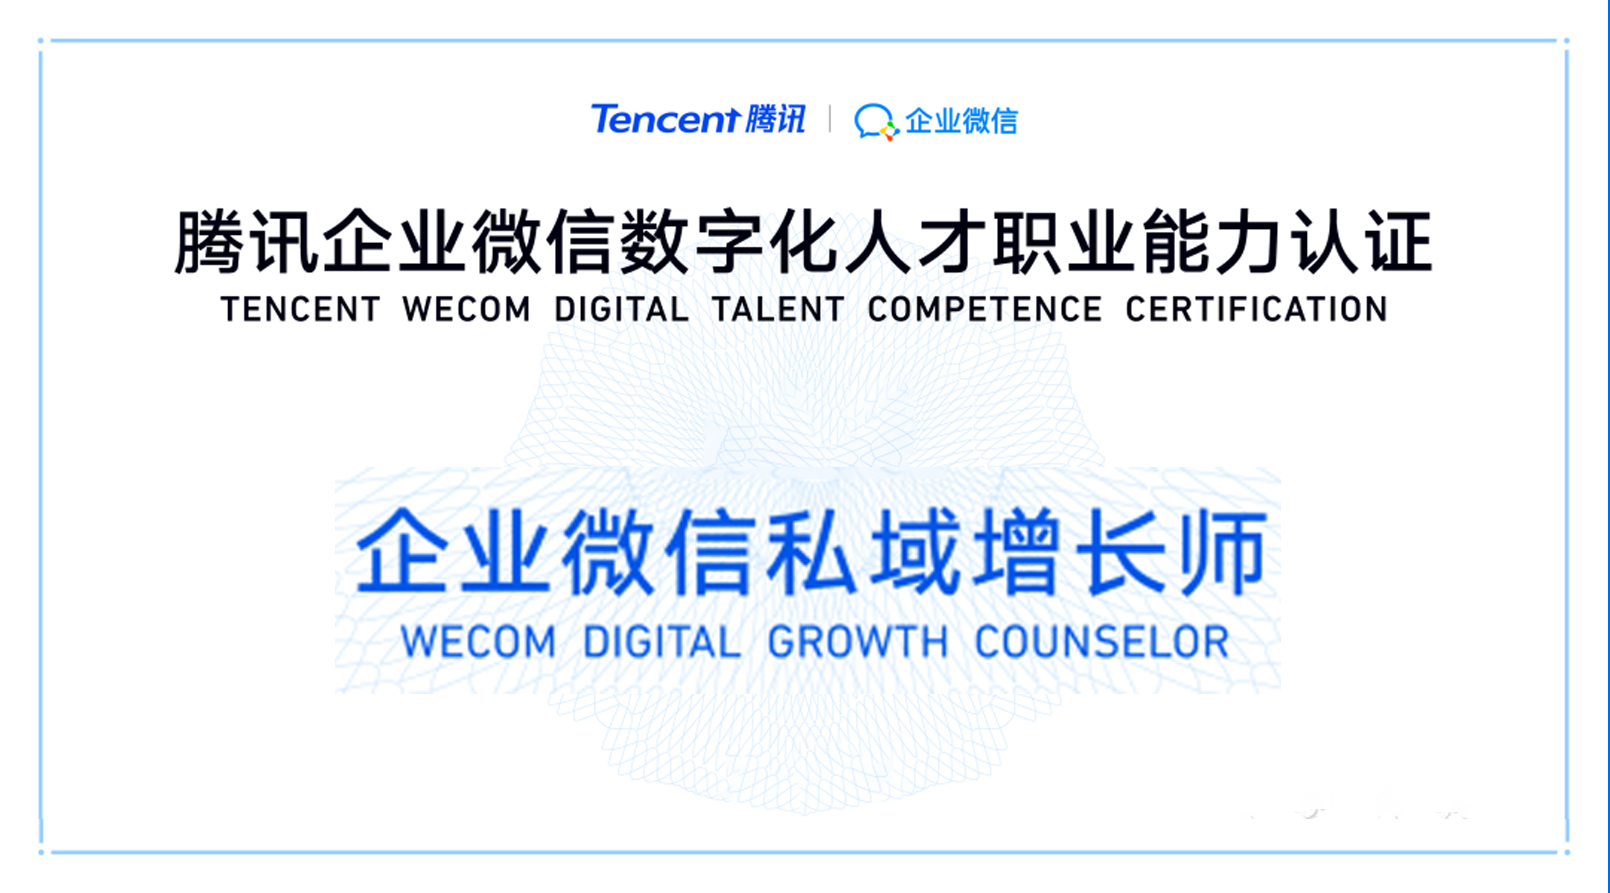 恭喜智顺网络新增多名优秀人才获得「企业微信私域增长师」职业认证